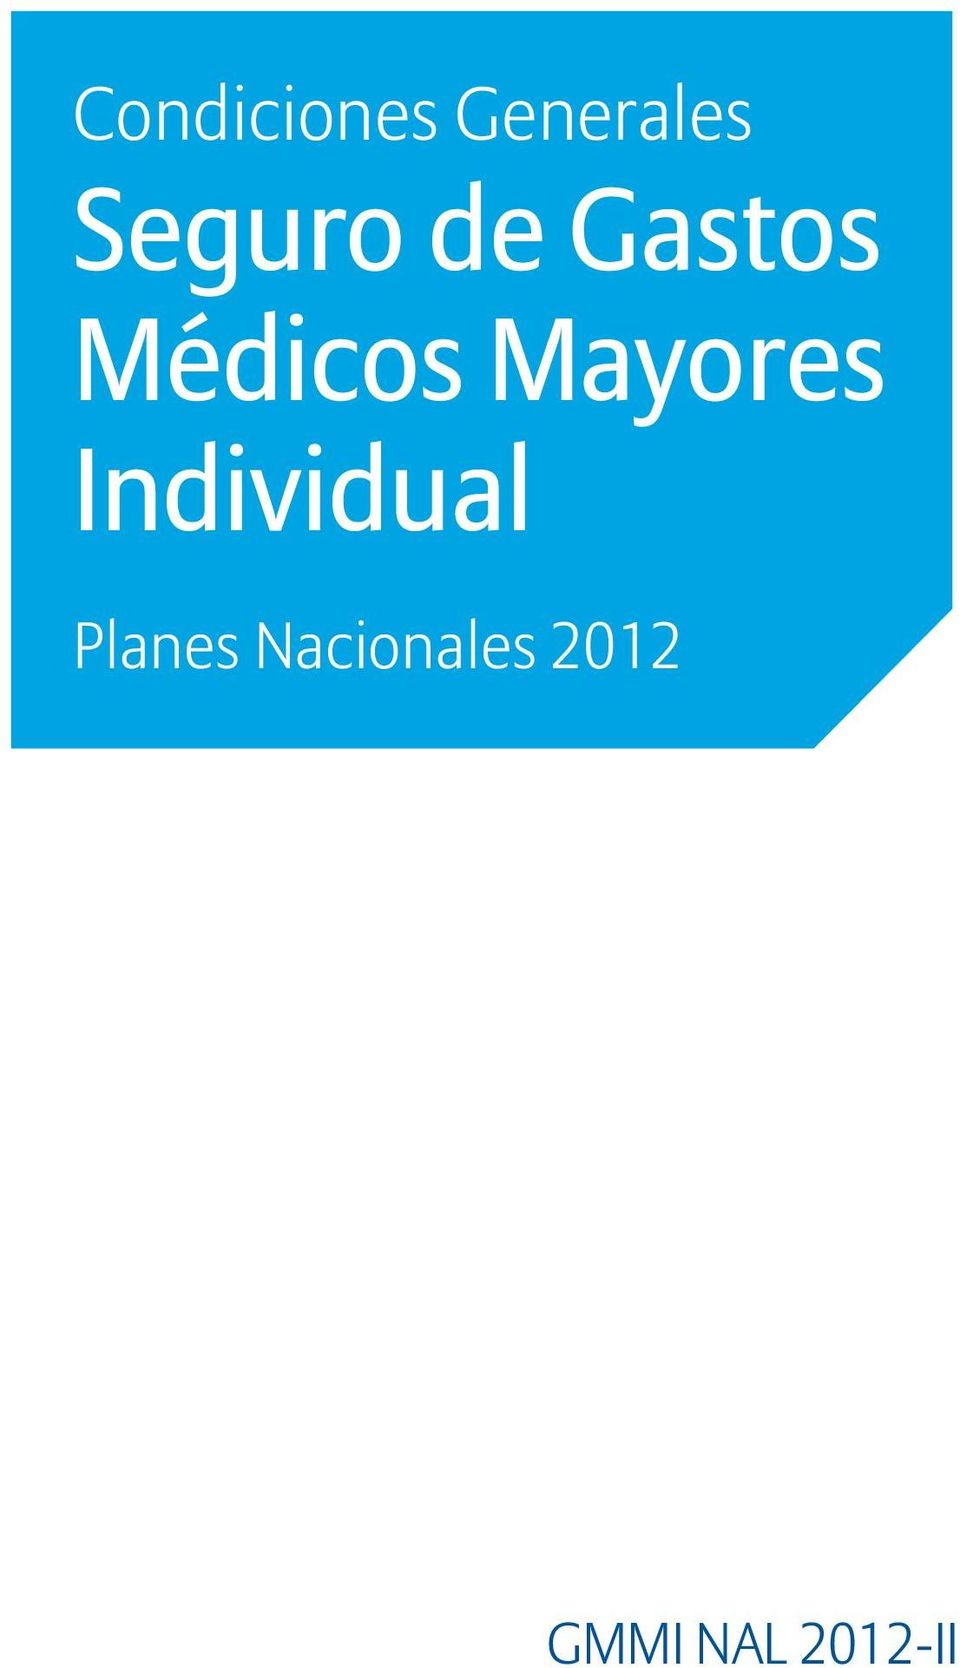 Mayores Individual Planes